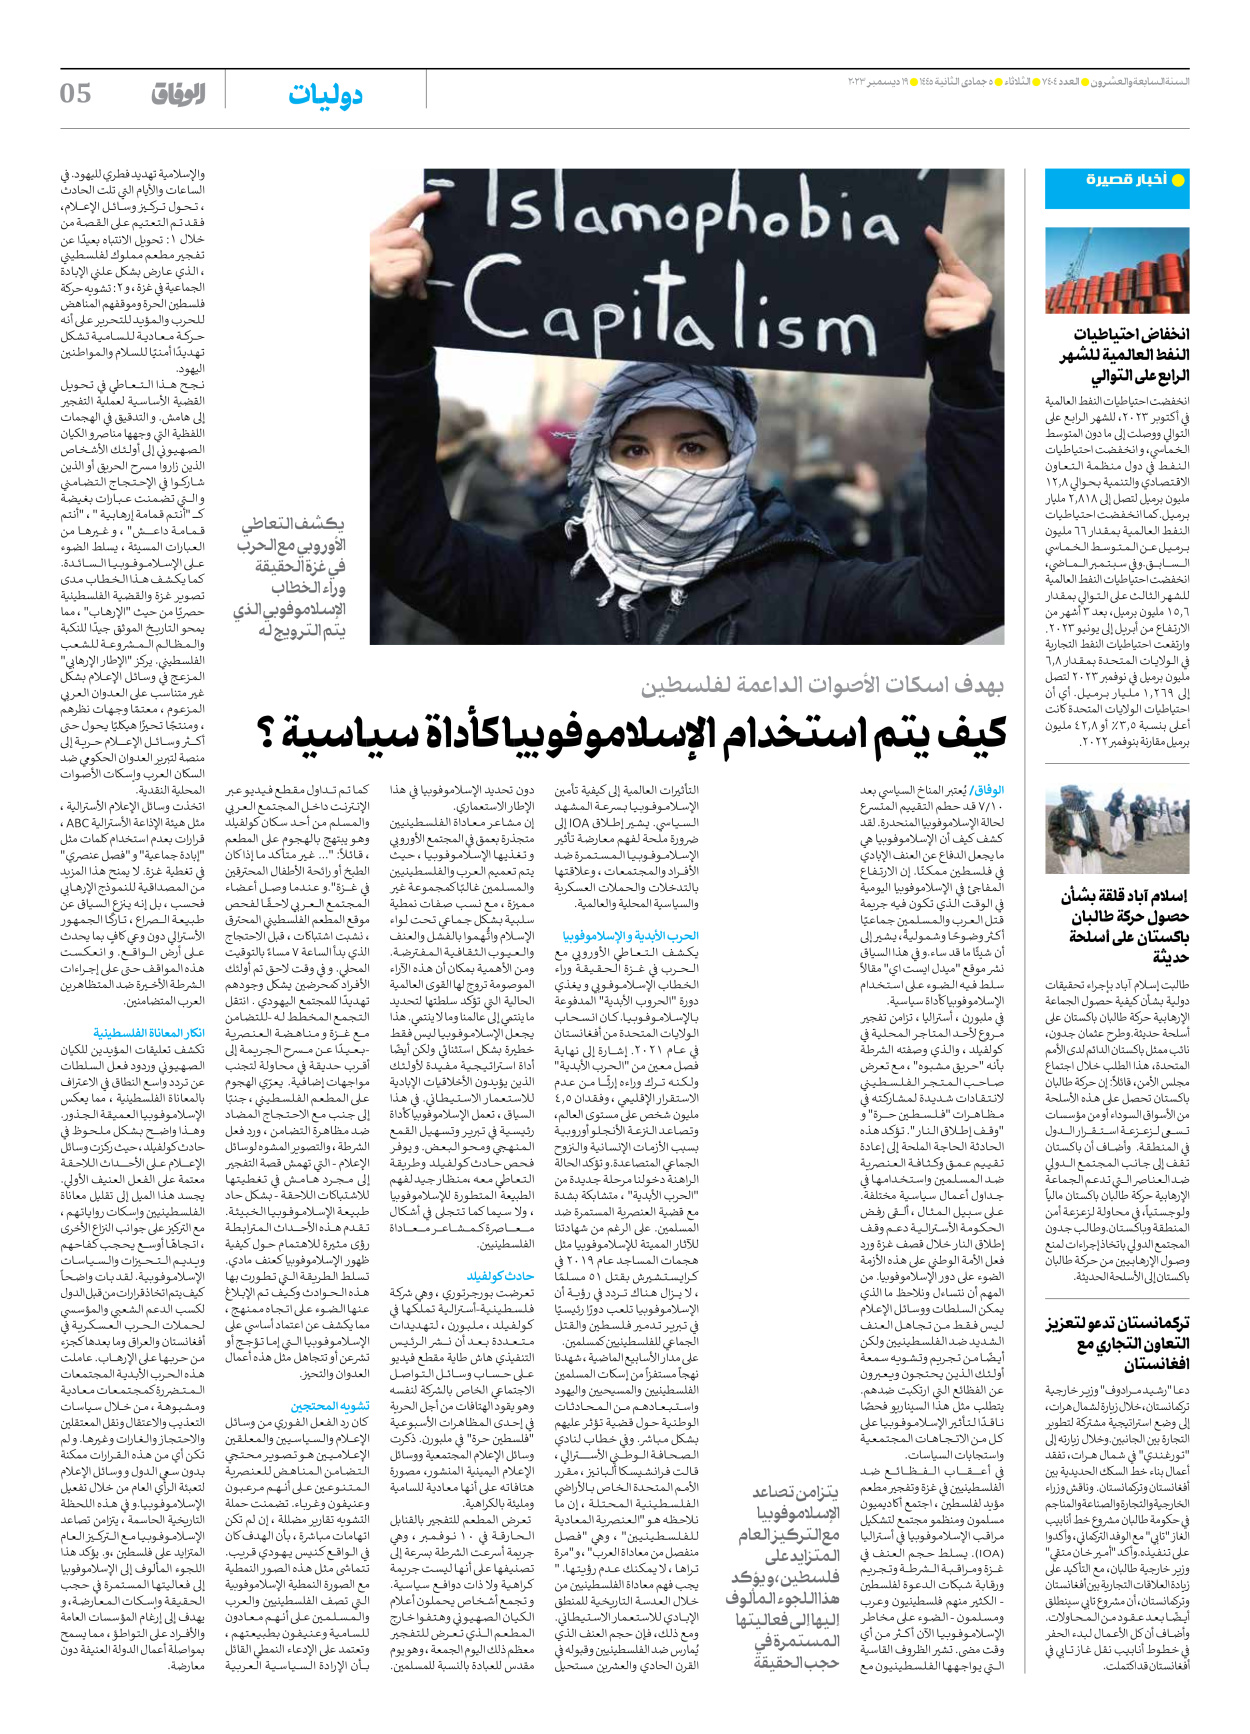 صحیفة ایران الدولیة الوفاق - العدد سبعة آلاف وأربعمائة وأربعة - ١٩ ديسمبر ٢٠٢٣ - الصفحة ٥